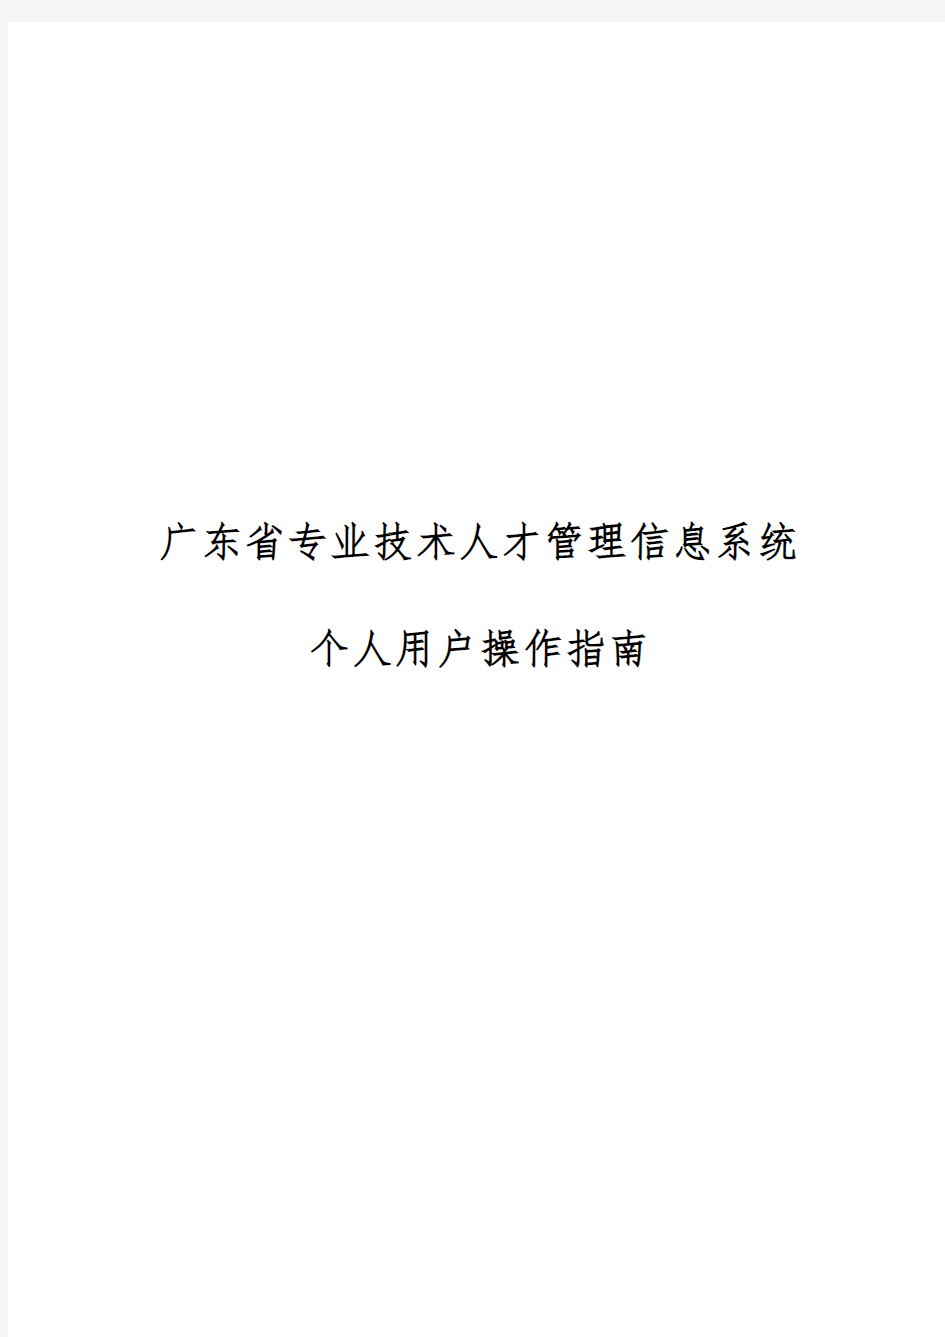 2016年广东省职称评审申报系统_个人操作指引